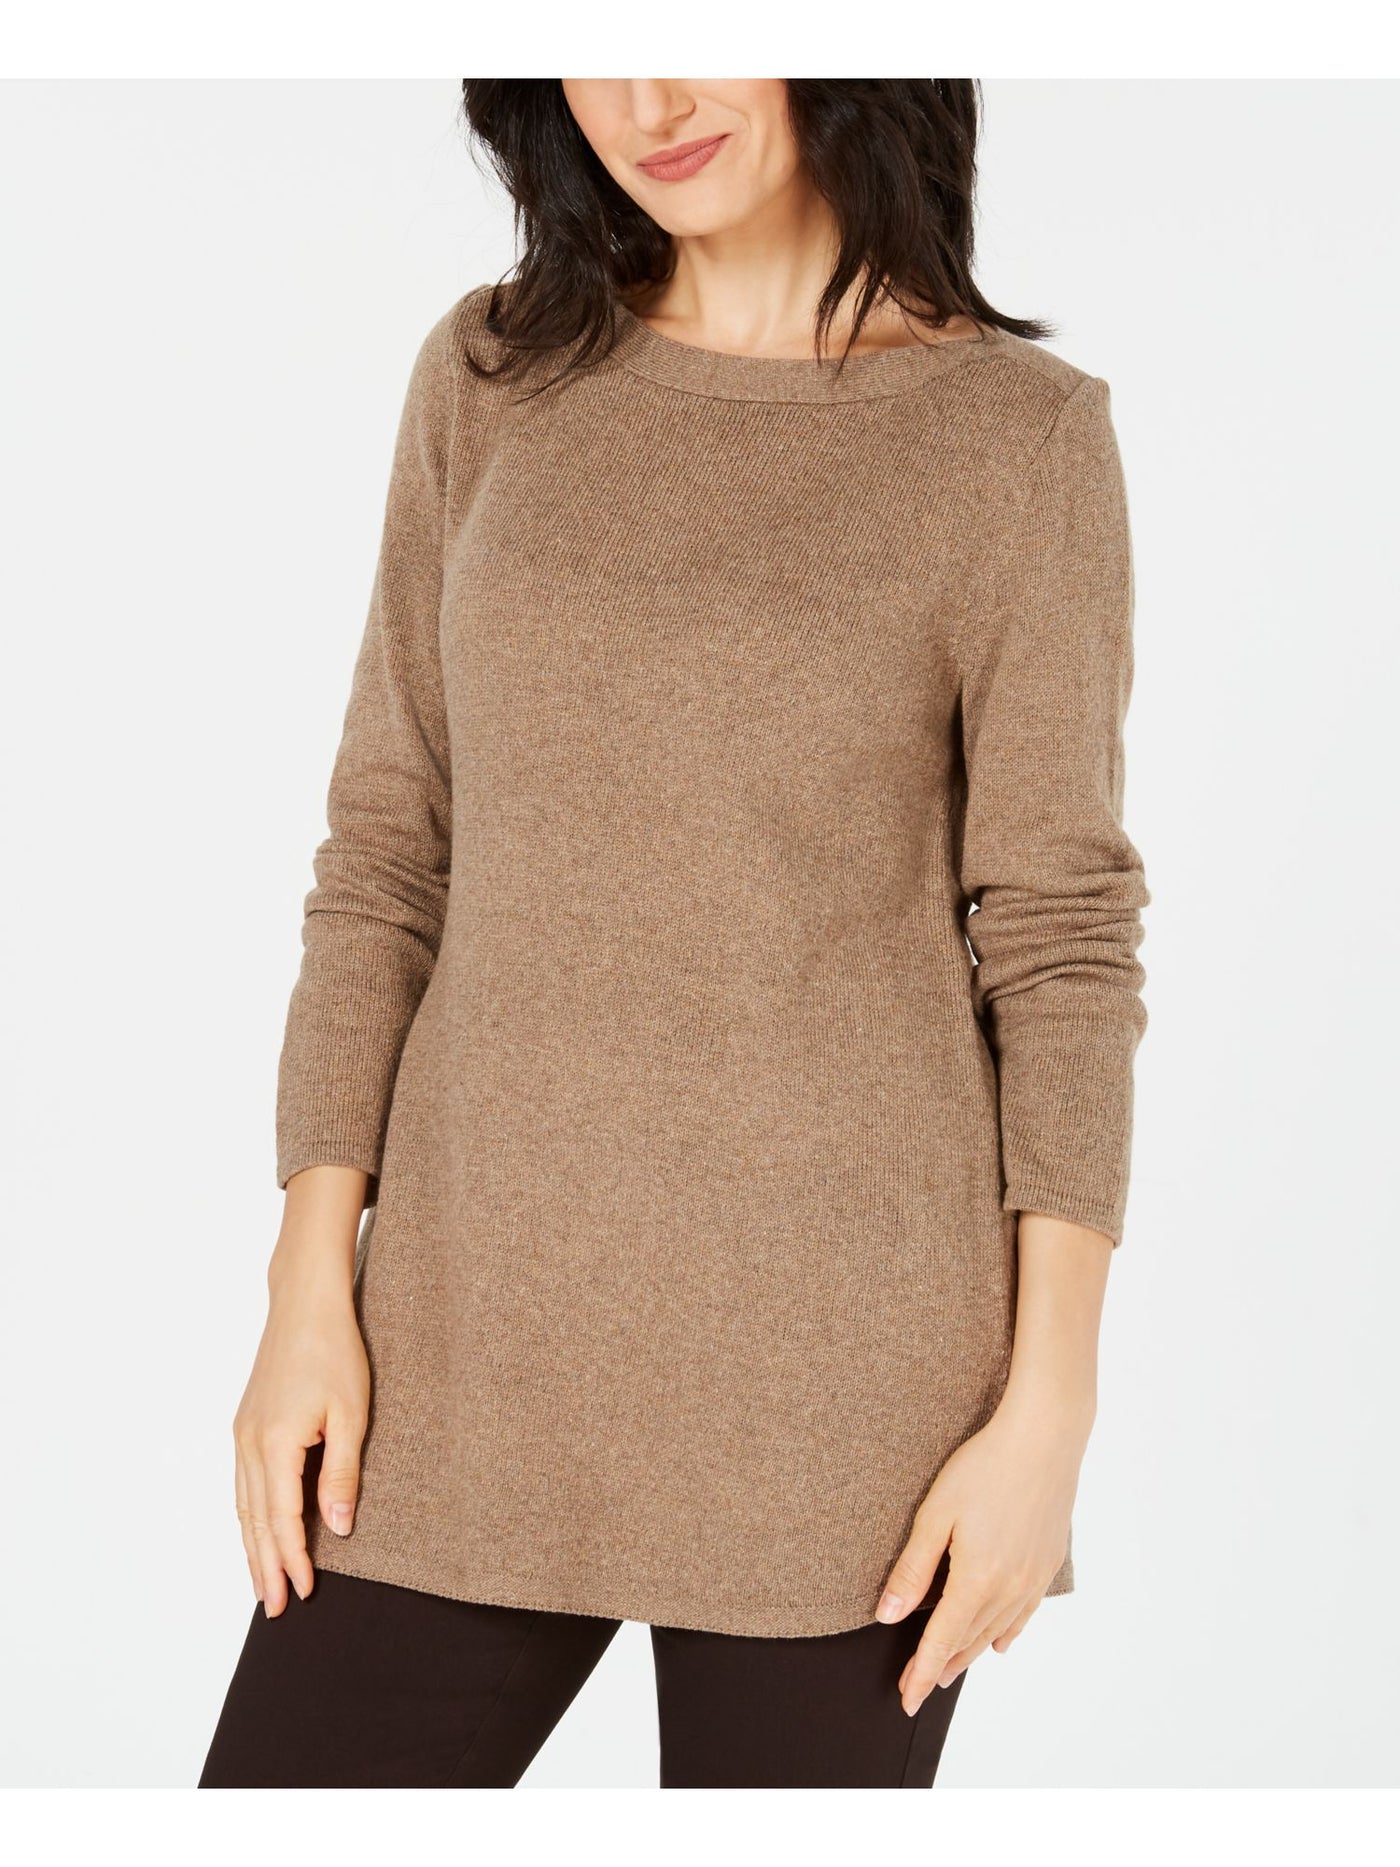 KAREN SCOTT Womens Brown Cotton Blend Long Sleeve Boat Neck Tunic Sweater L